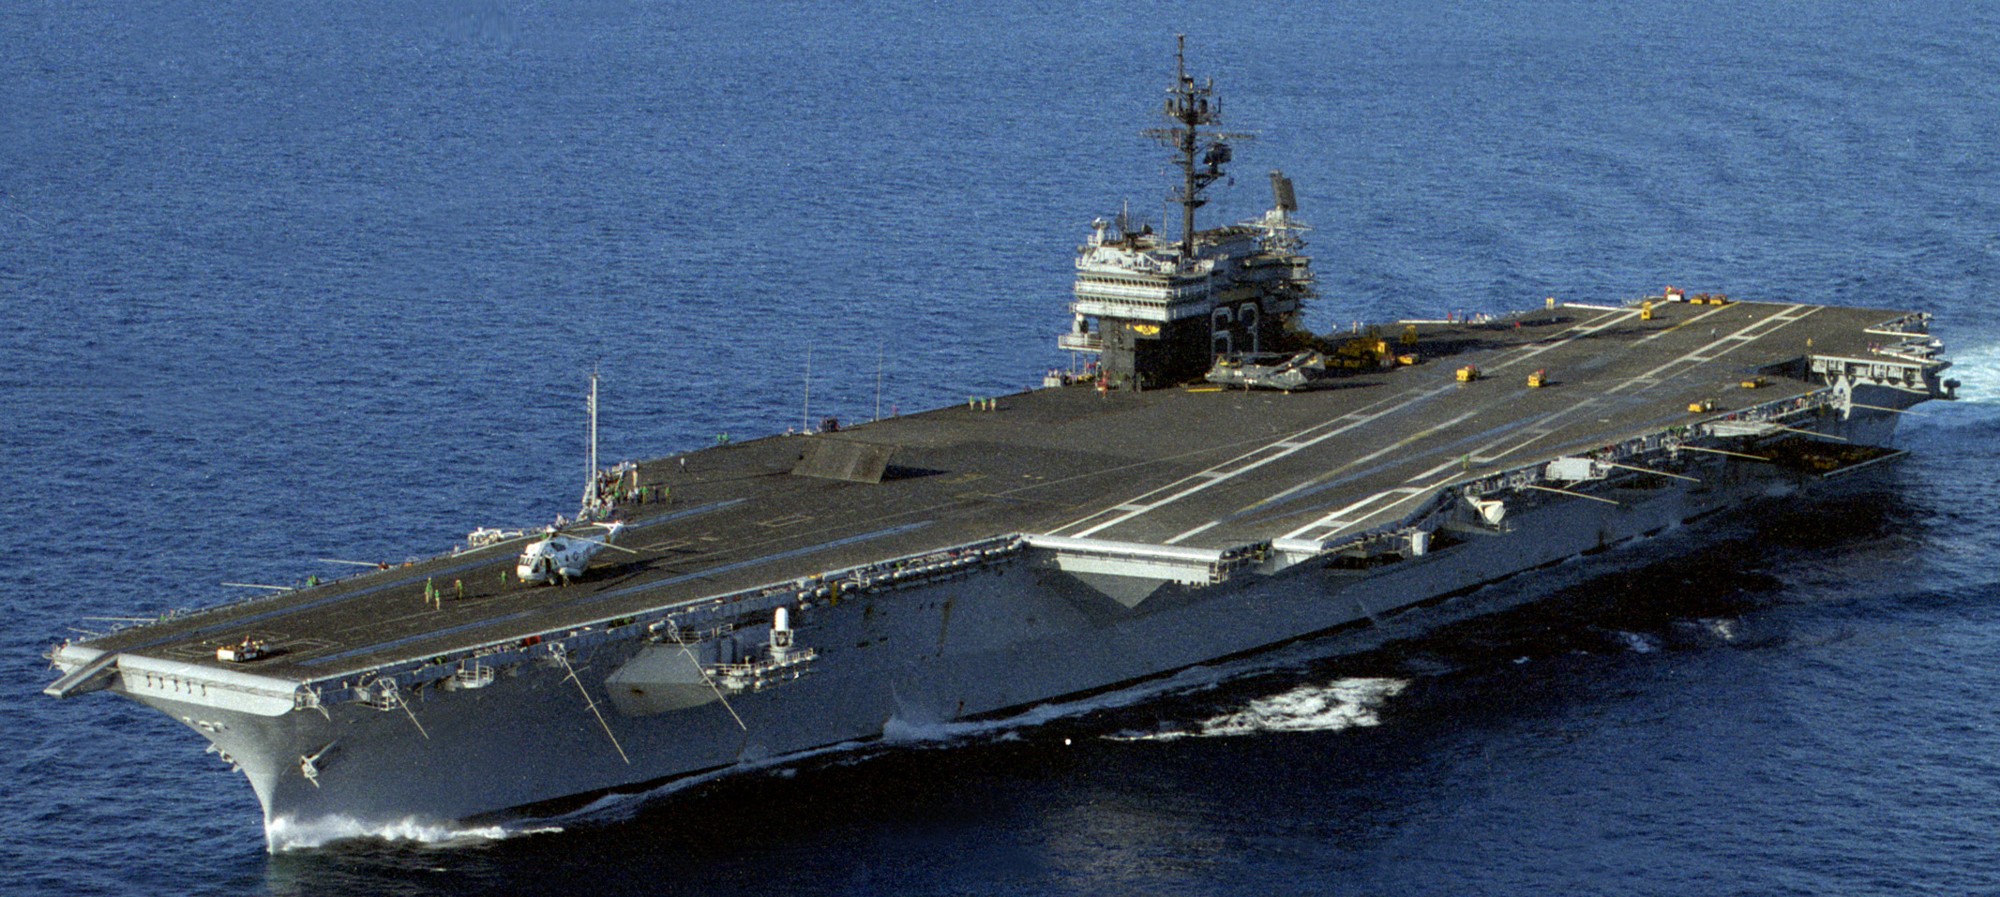 cv-63 uss kitty hawk aircraft carrier us navy 454